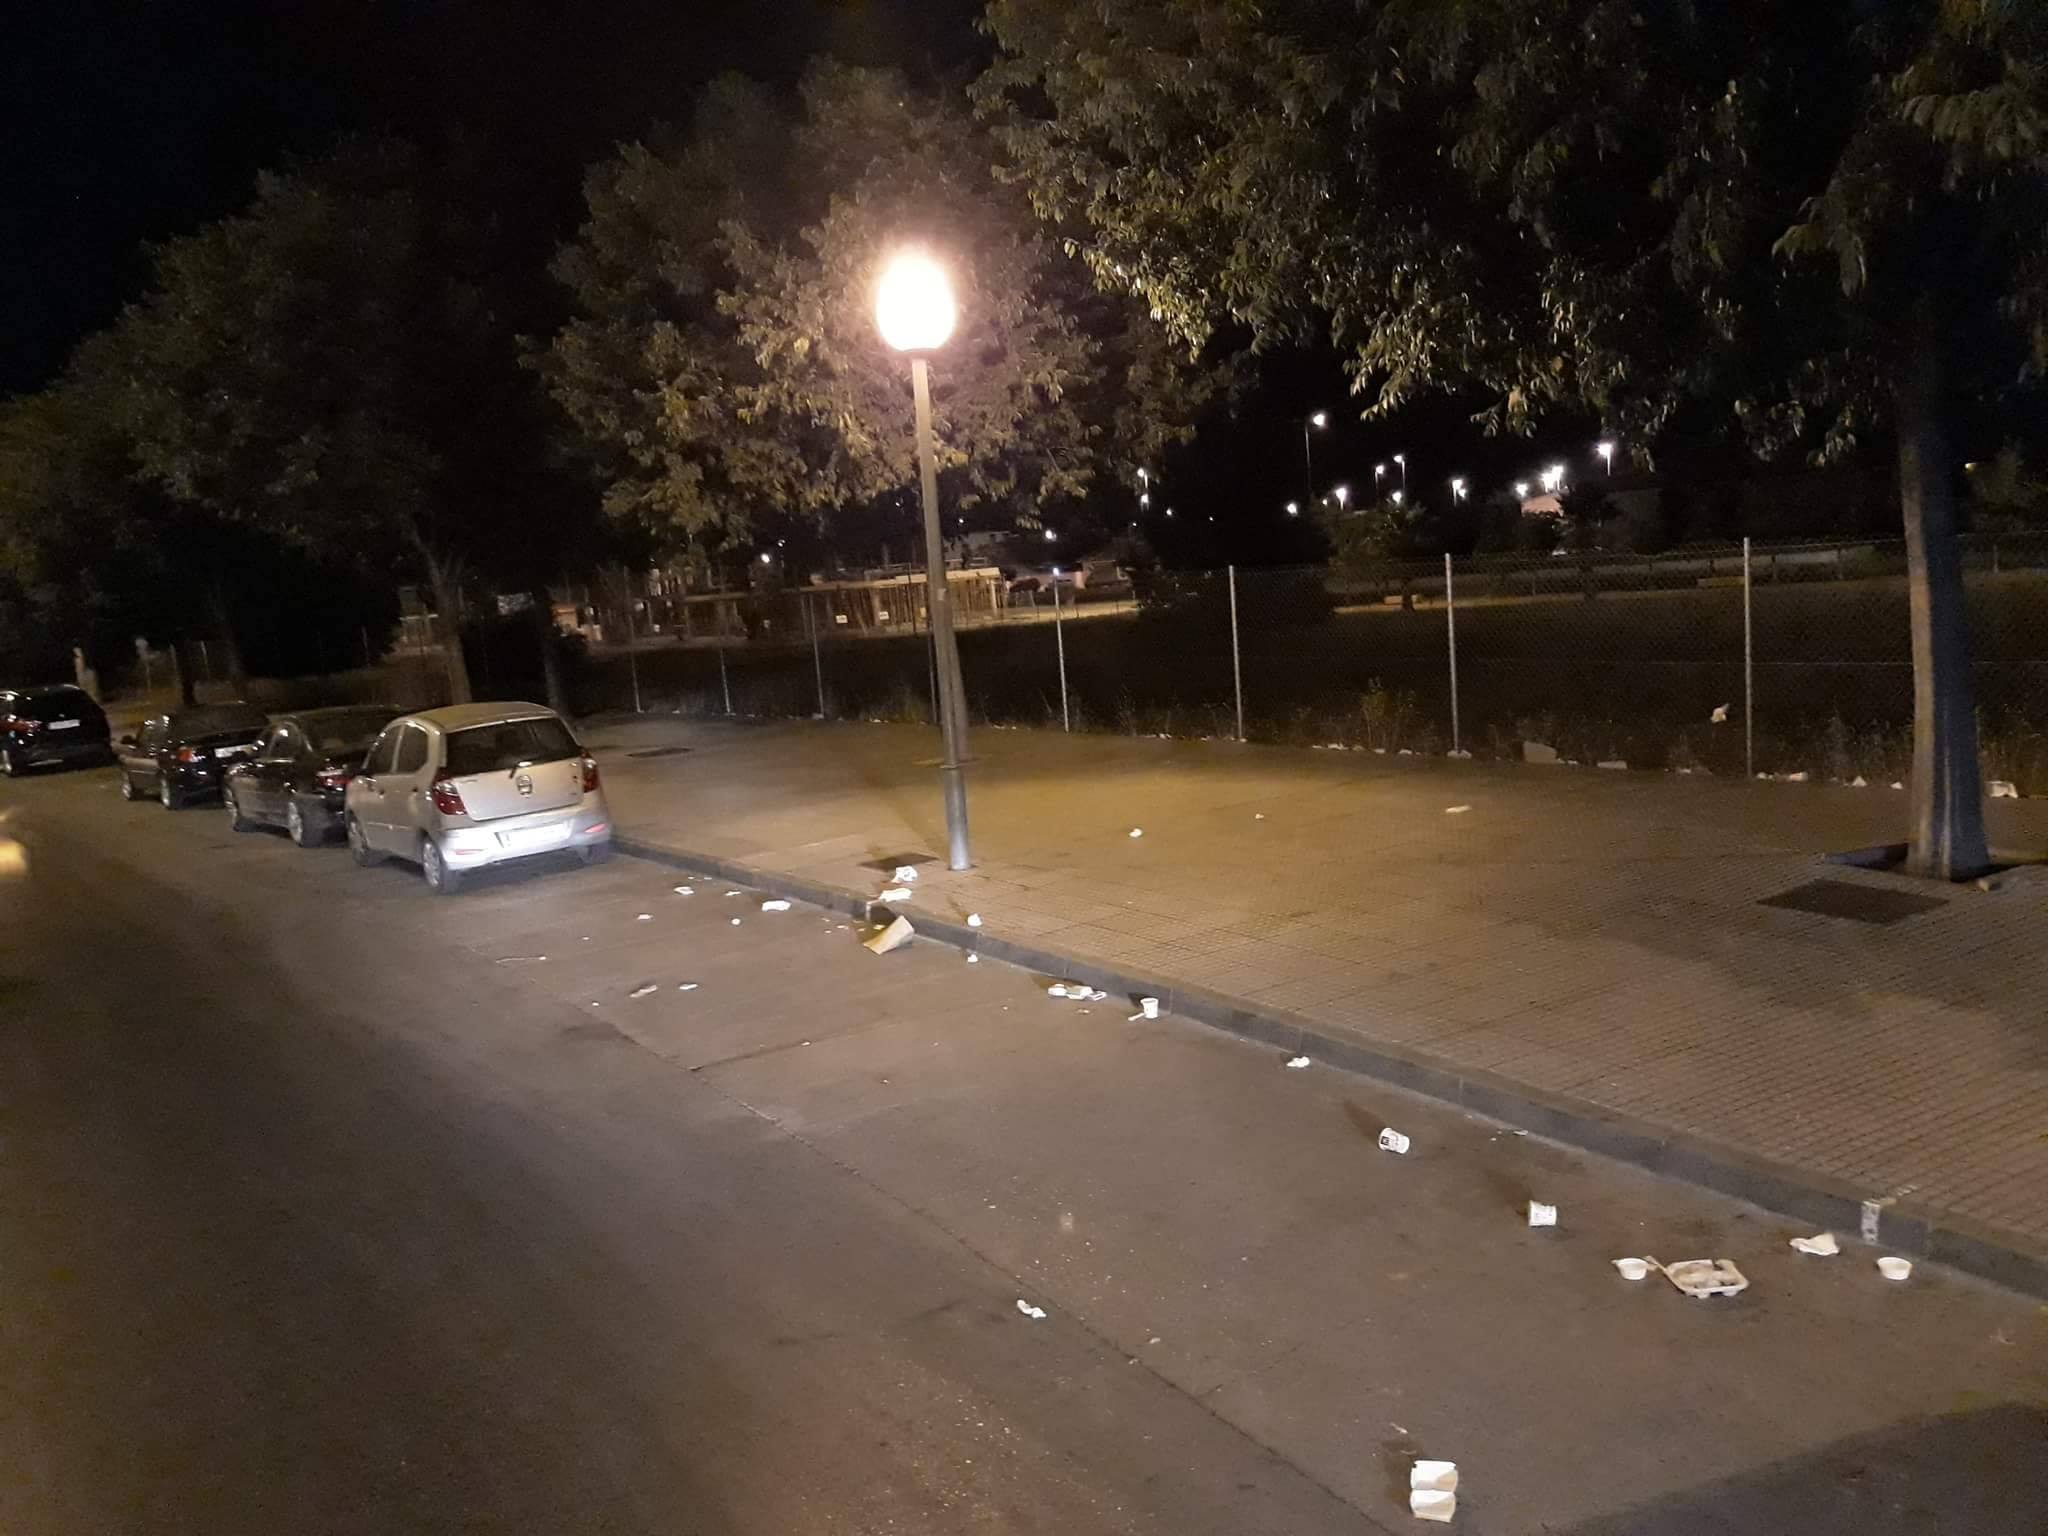 Estado habitual de la zona de la avenida Caballero Bonald más próxima a McDonald's, en una foto-denuncia vecinal subida a Facebook.